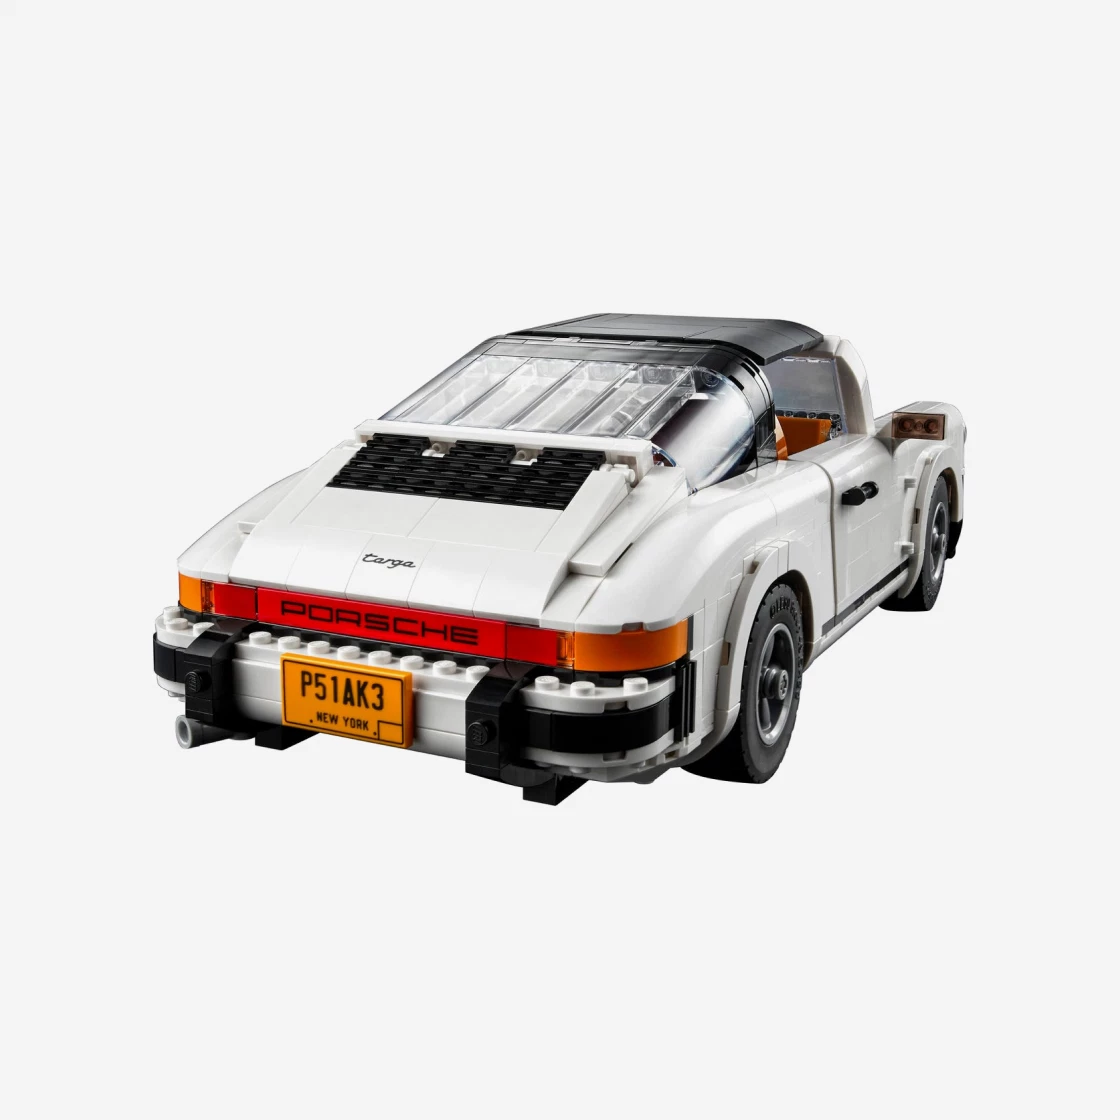 SASOM  collectibles Lego Porsche 911 Check the latest price now!